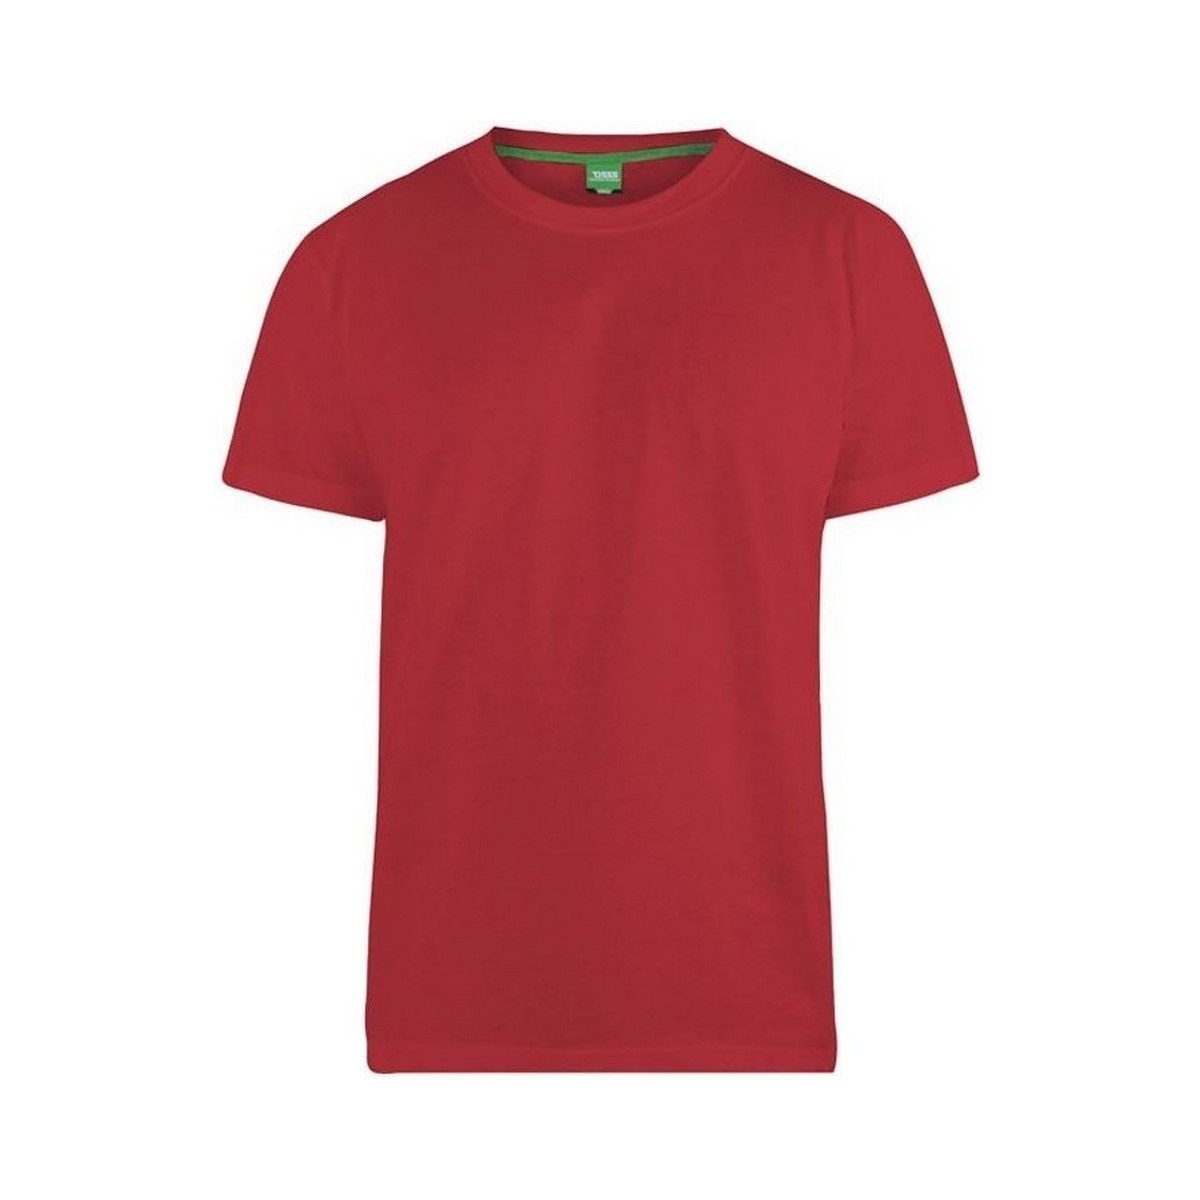 Vêtements Homme T-shirts manches longues Duke Flyers-2 Rouge